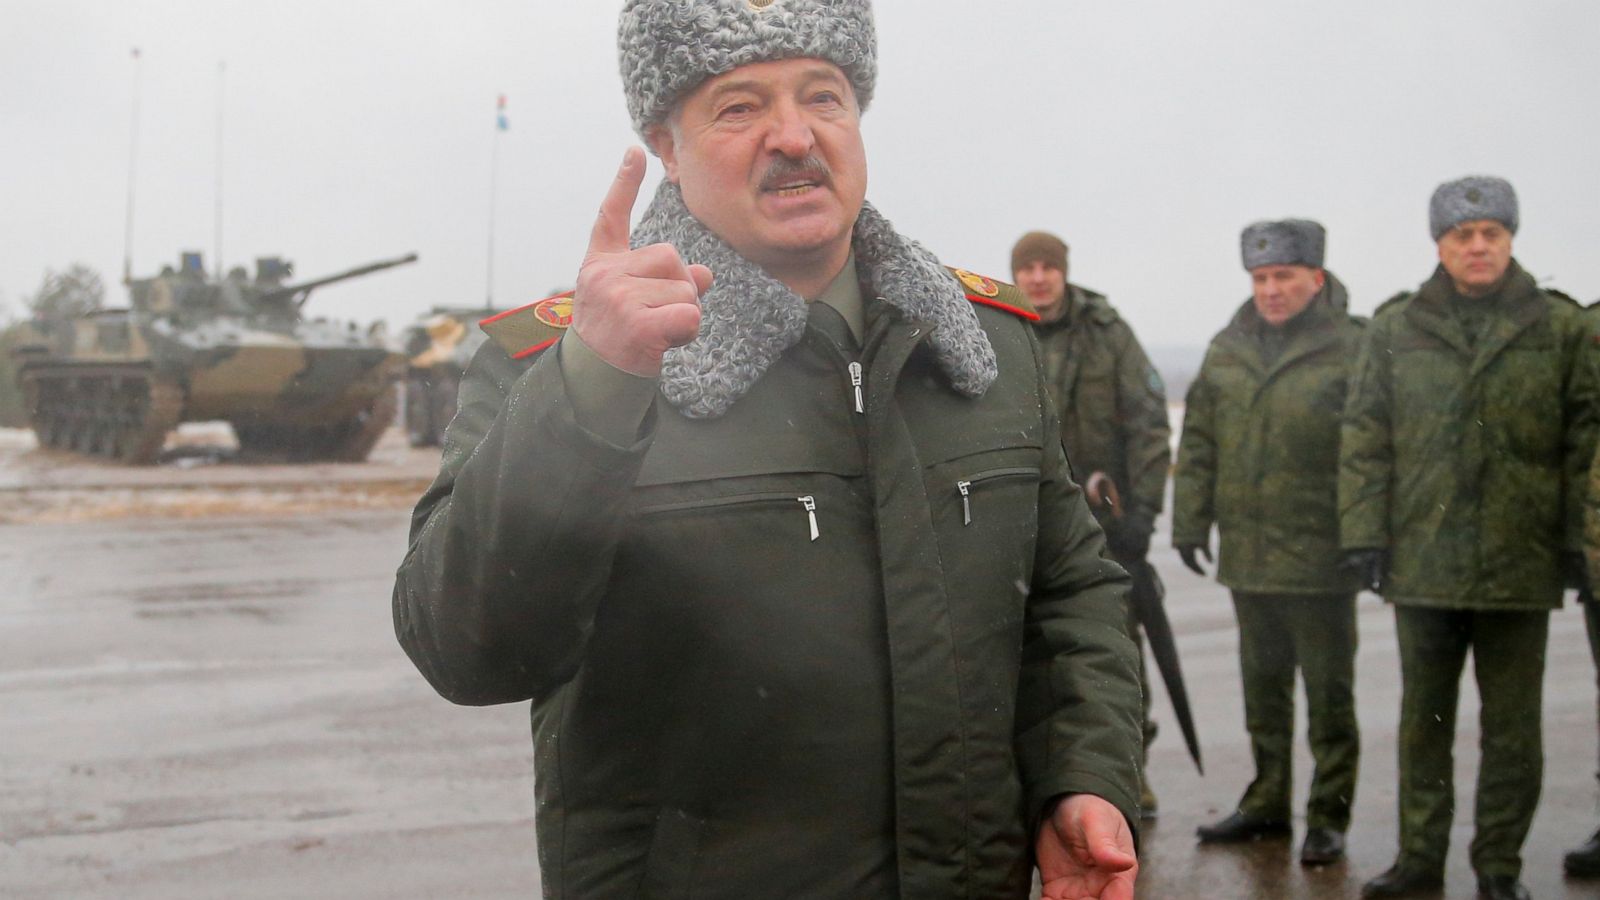 La Ue replica a Lukashenko: "Ci proteggiamo dopo le minacce della Bielorussia e dell'invasione russa dell'Ucraina"